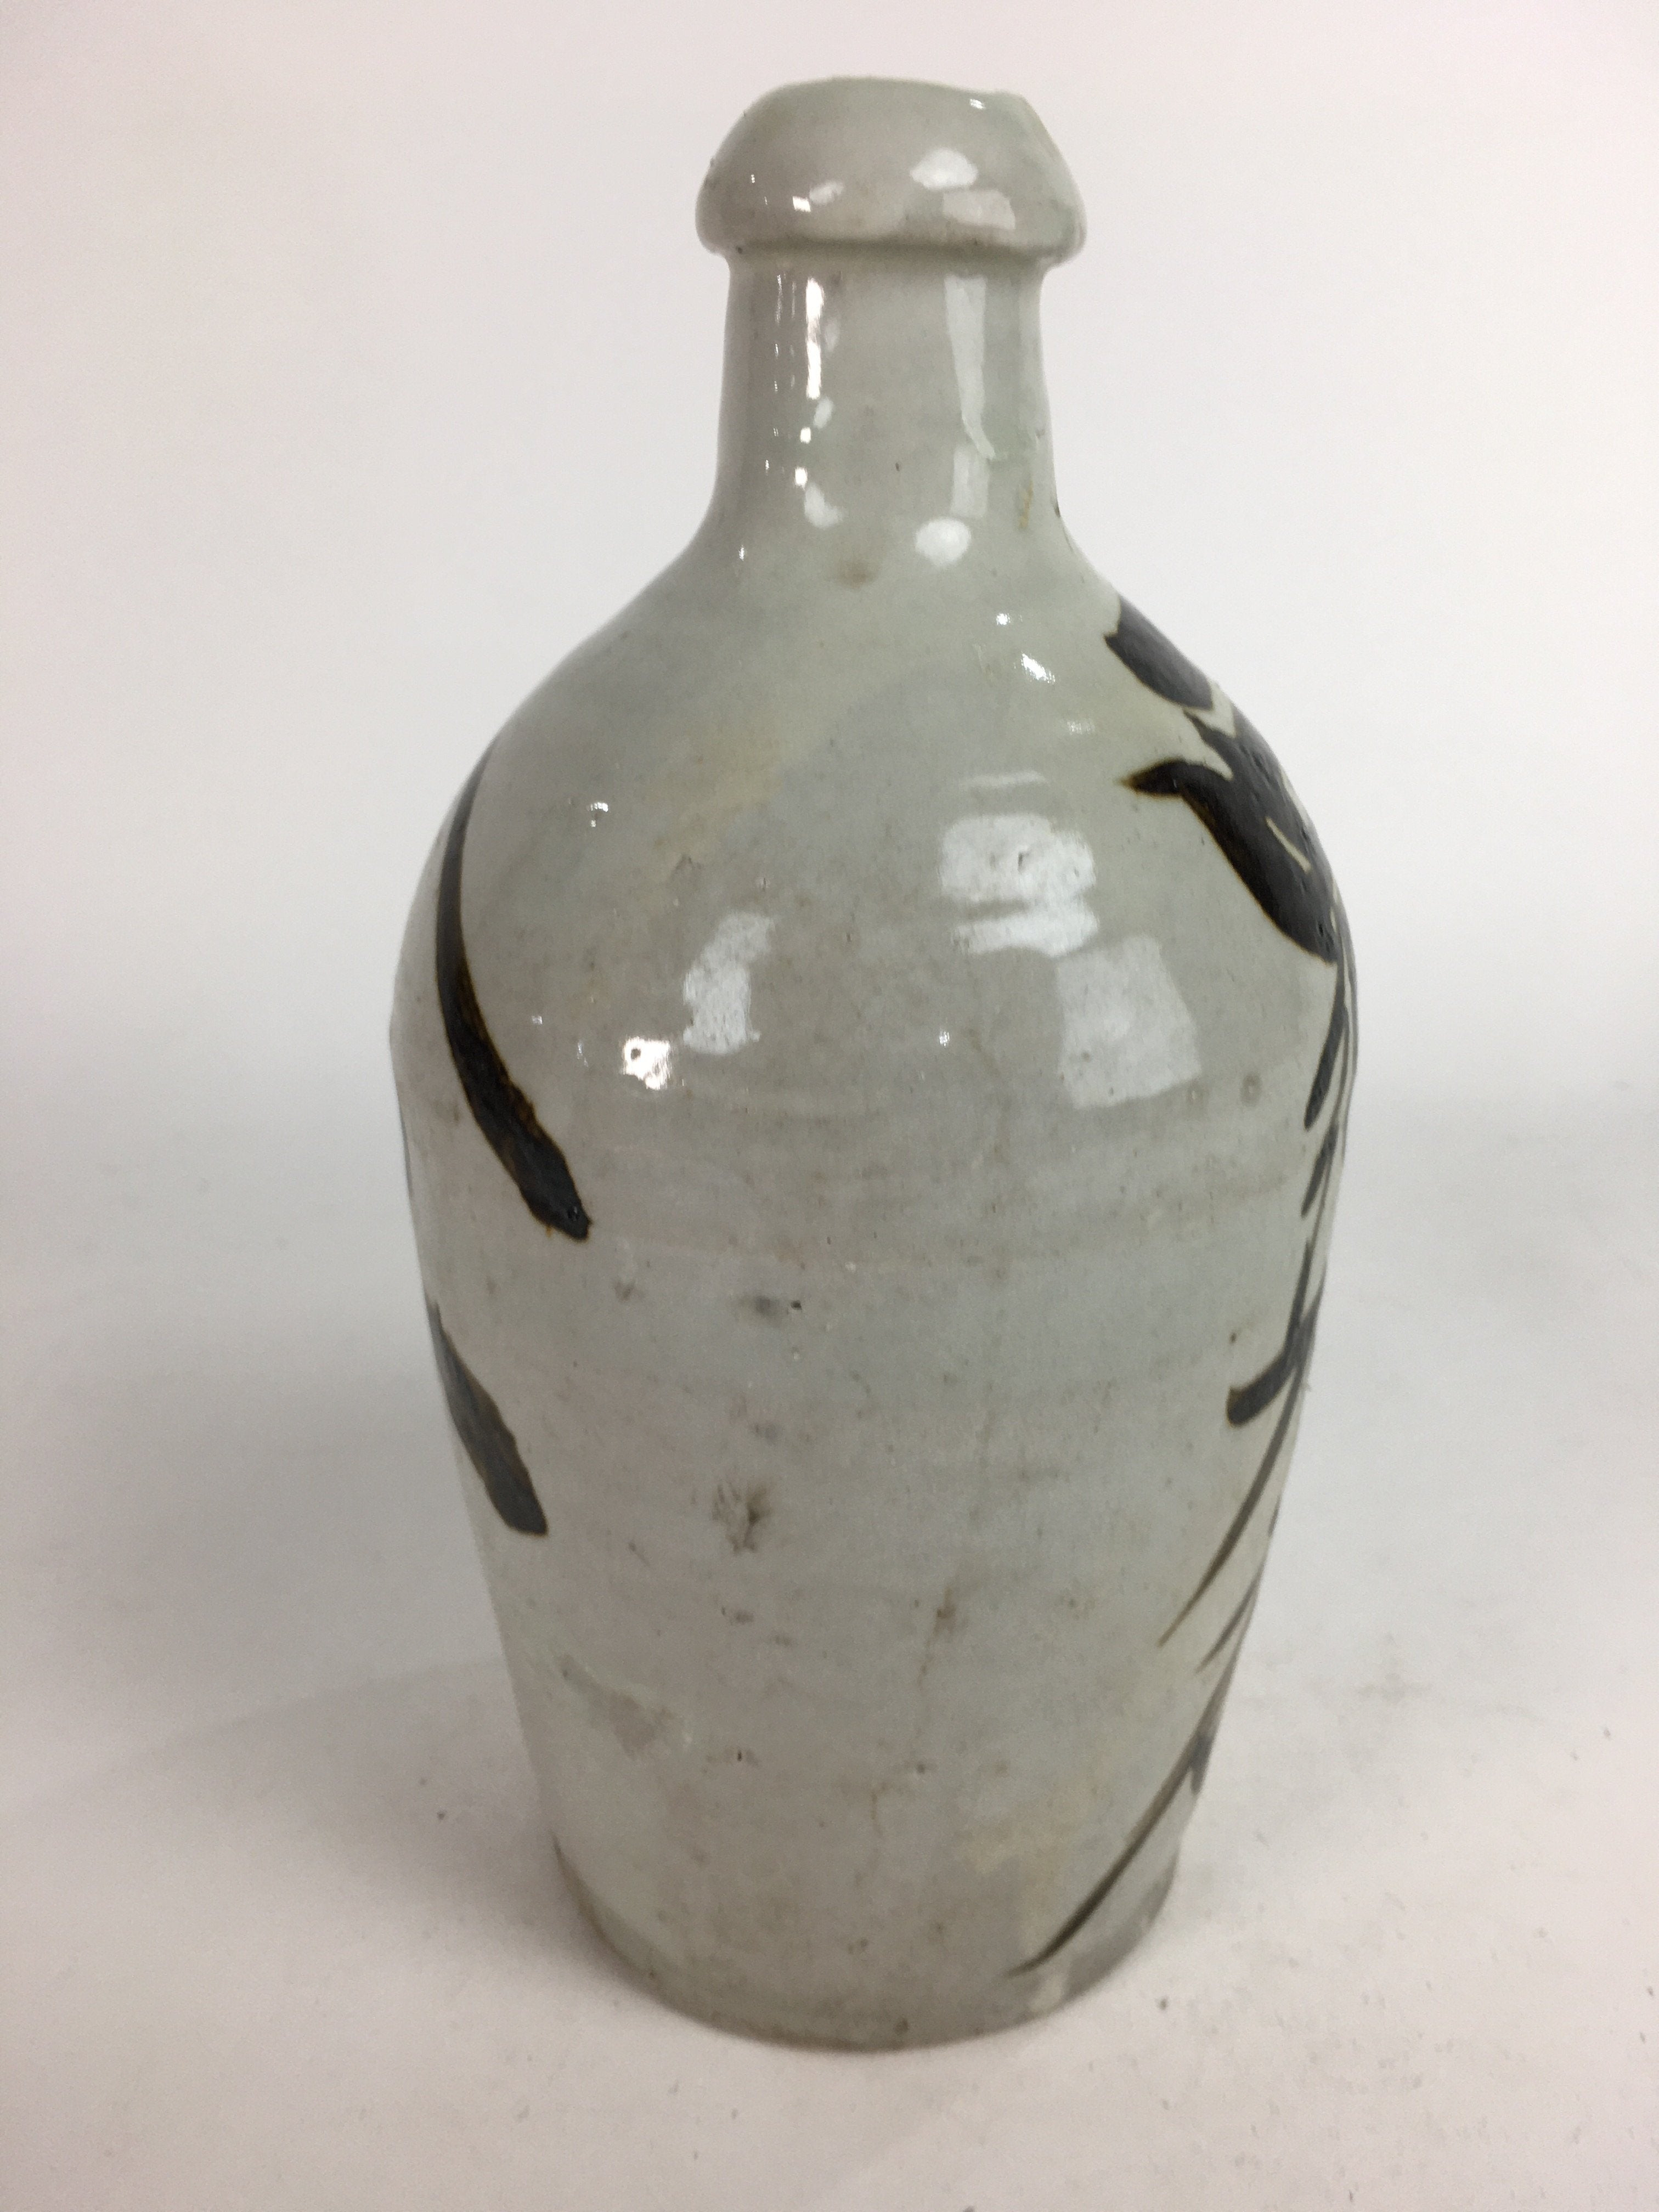 Japanese Ceramic Sake Bottle Tokkuri Vtg Pottery Gray Hand-Written Kanji TS277